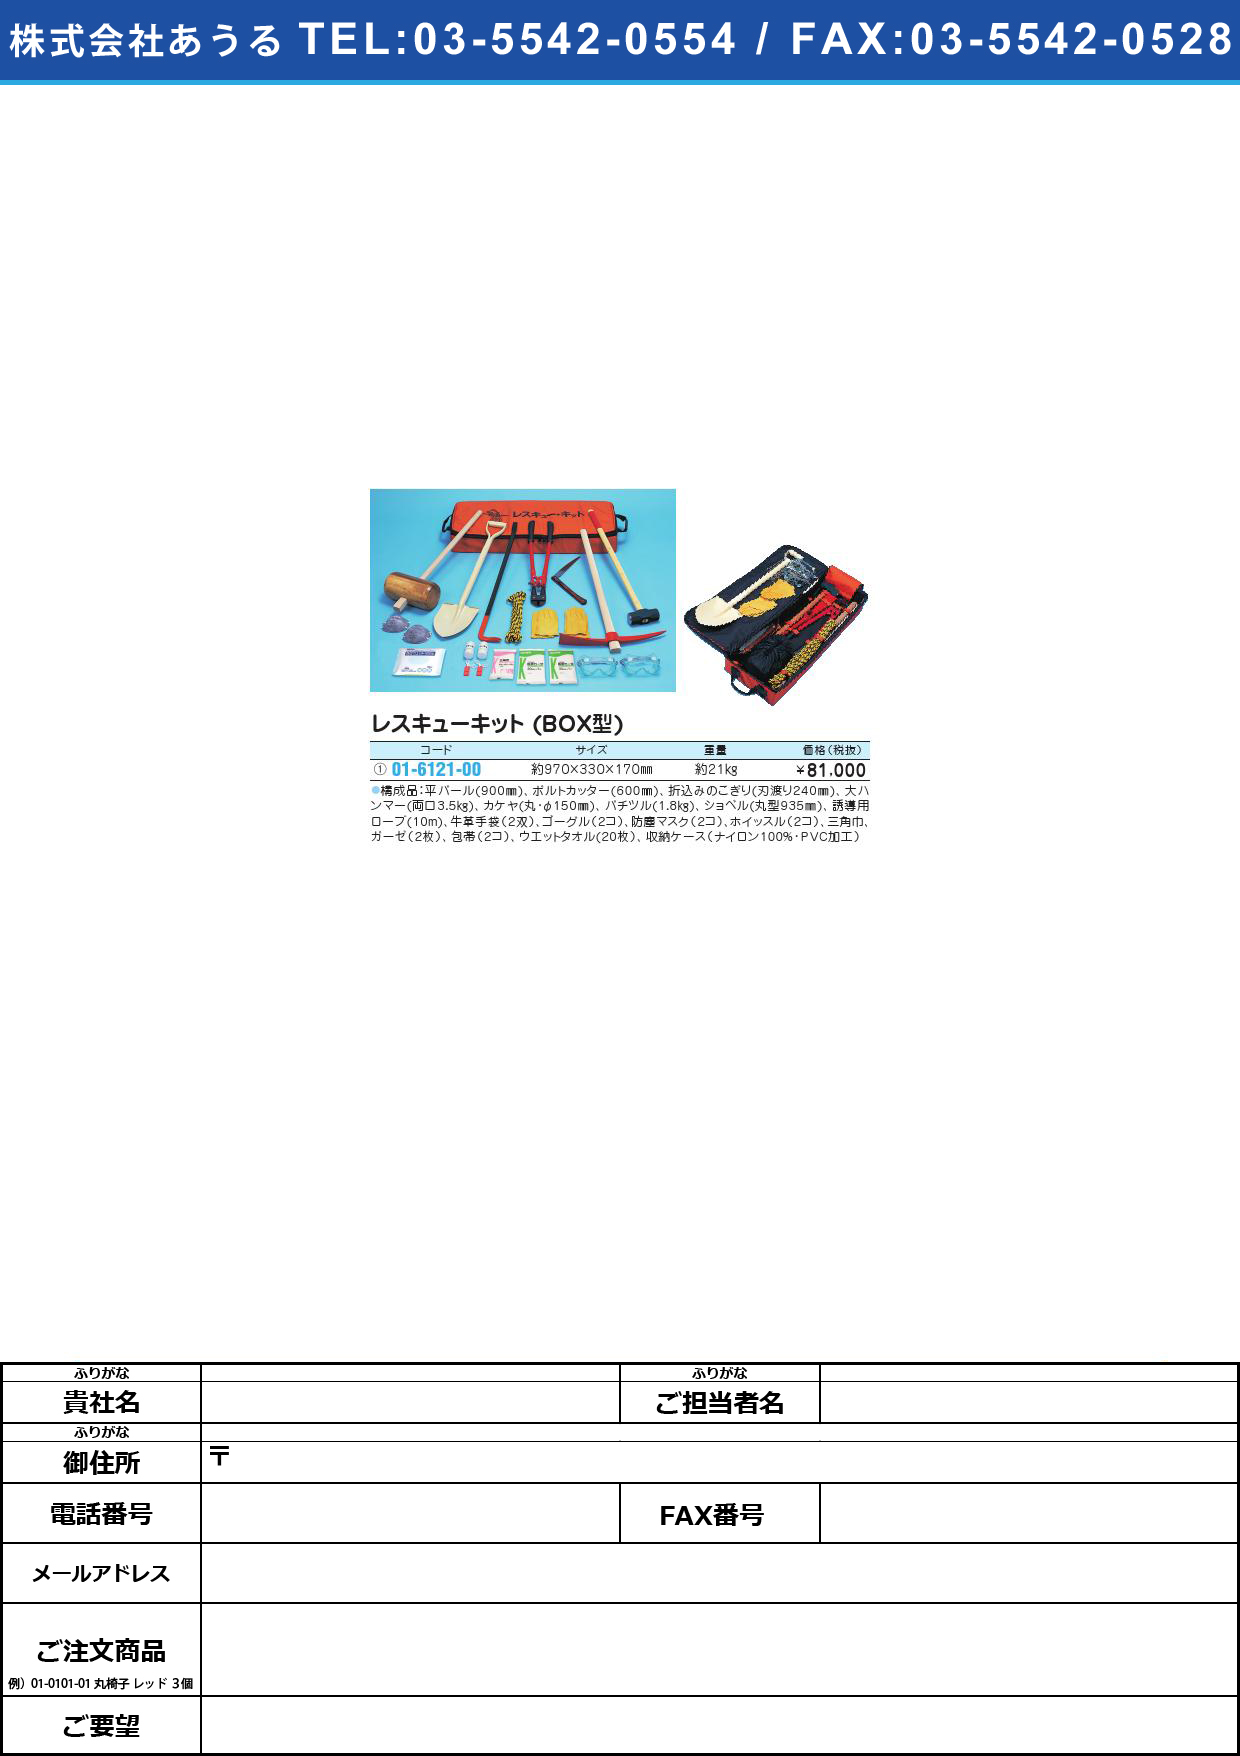 レスキューキット（ＢＯＸ型） 6955ﾚｽｷｭｰｷｯﾄ(ﾎﾞｯｸｽｶﾞﾀ)(01-6121-00)【1個単位】【2013年カタログ商品】